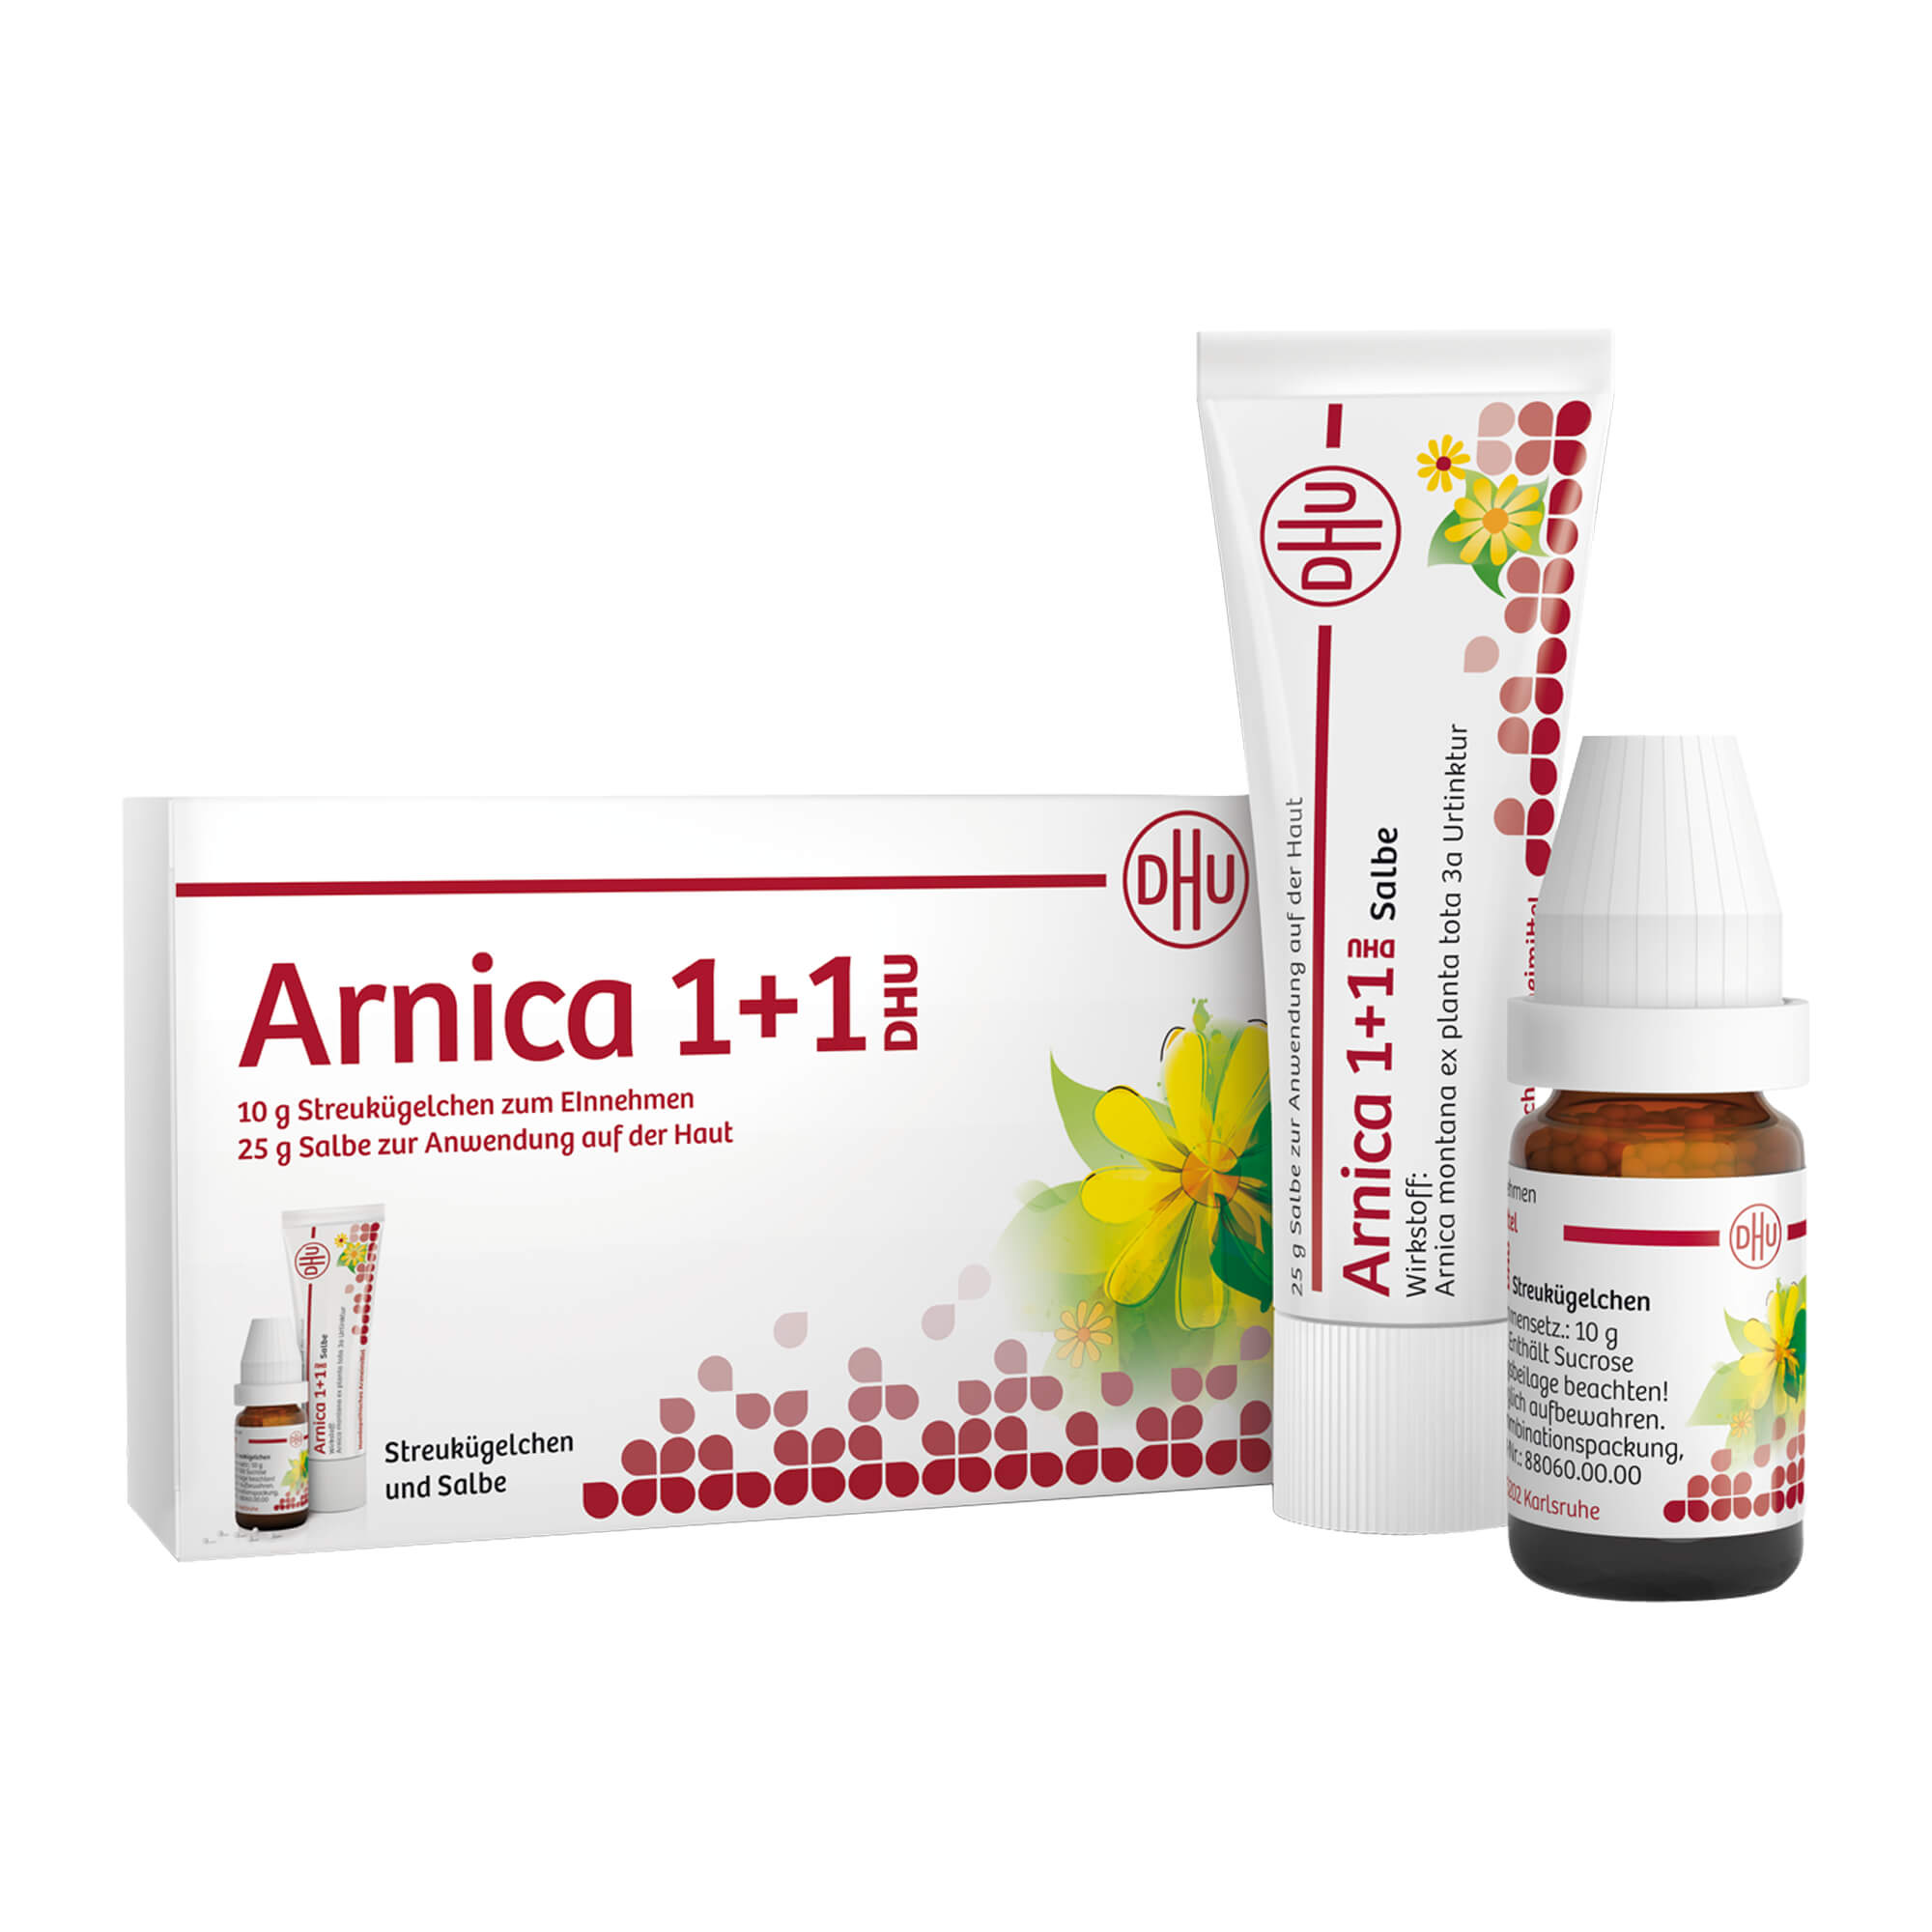 Homöopathisches Arzneimittel. Mit 10 g Arnica D6 Globuli und 25 g Arnica Salbe.